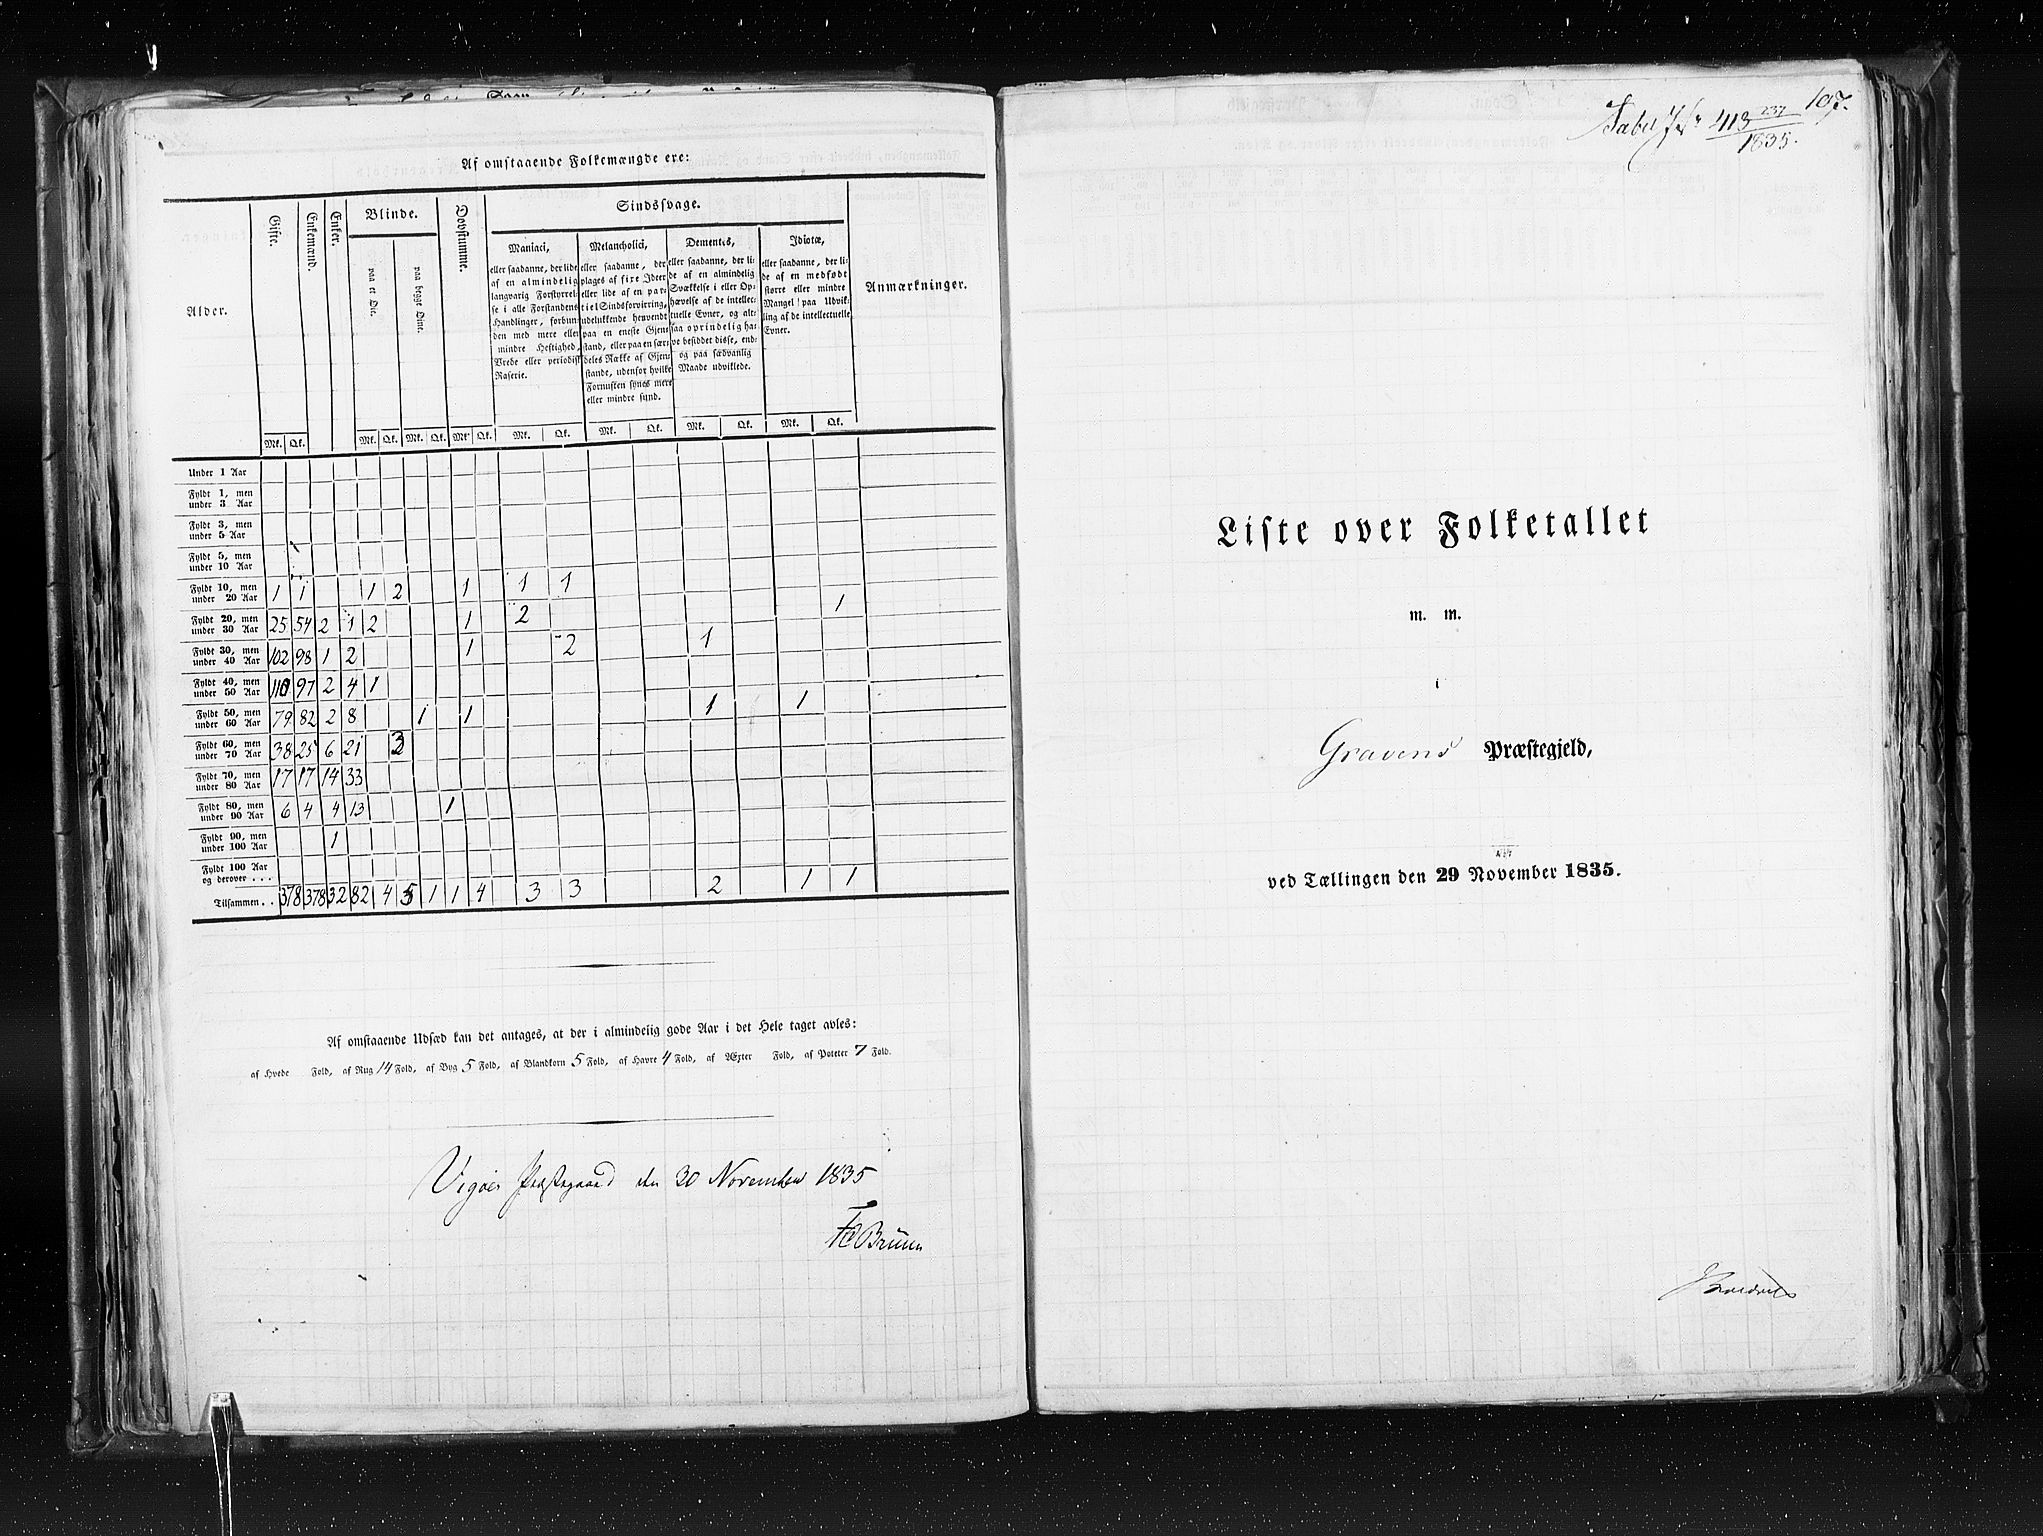 RA, Census 1835, vol. 7: Søndre Bergenhus amt og Nordre Bergenhus amt, 1835, p. 107